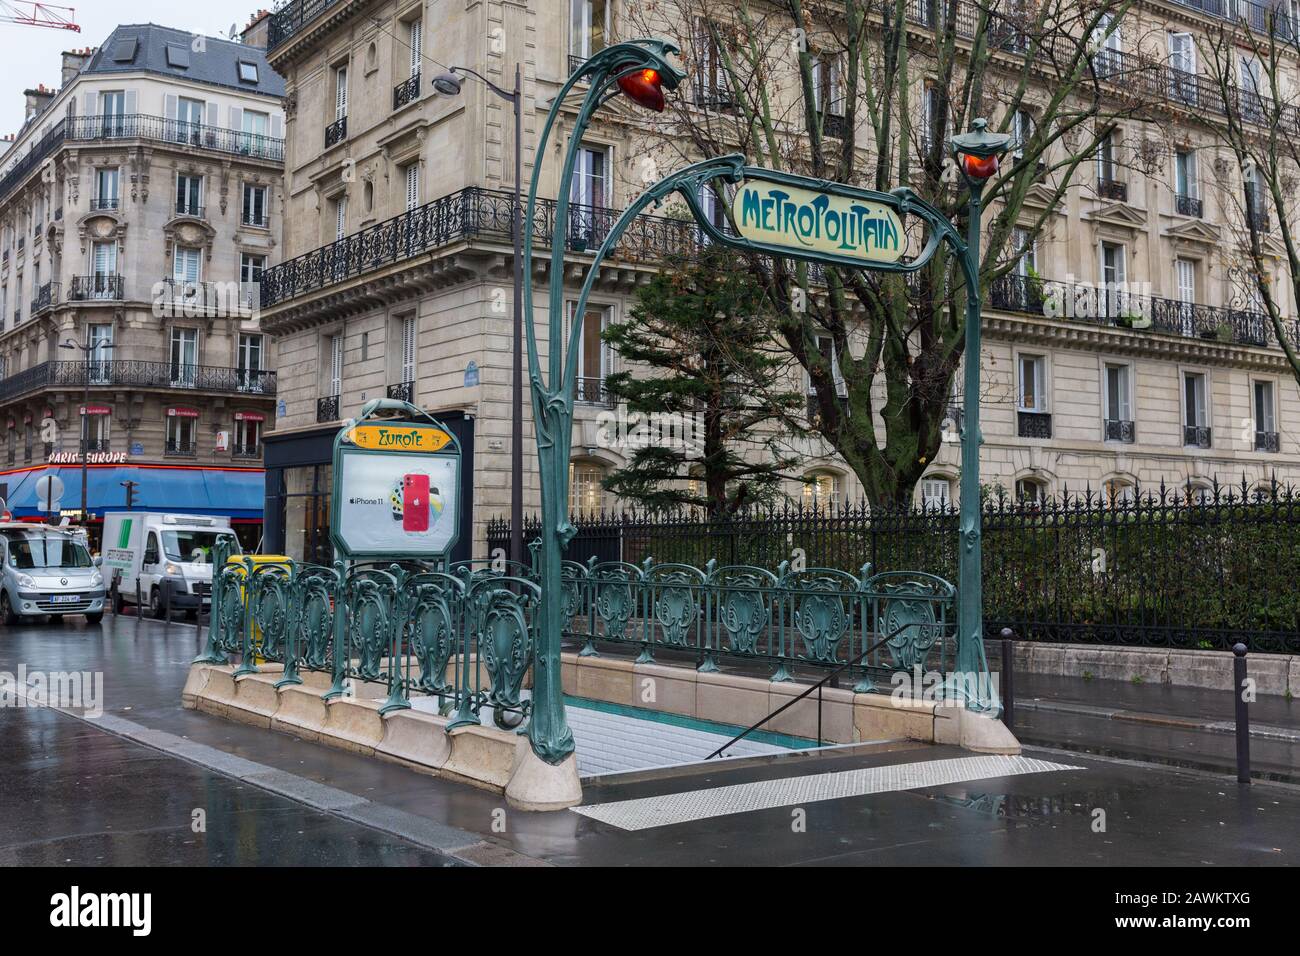 Ingresso alla metropoli - la metropolitana parigina. Il design della ringhiera intorno al cancello e il segno sopra è chiamato Art Nouveau. Foto Stock